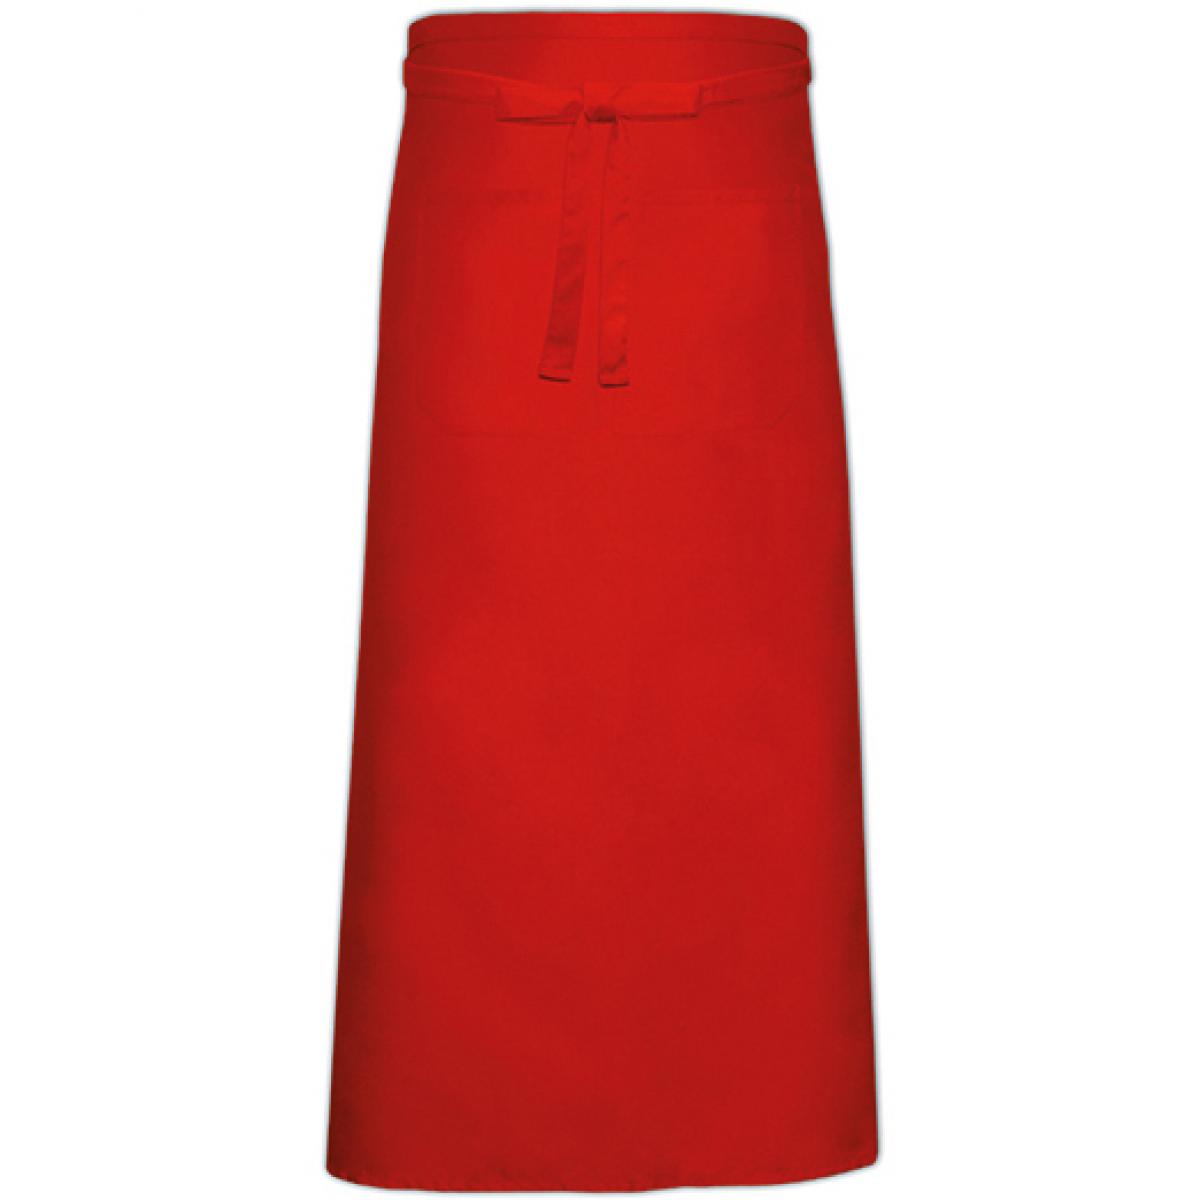 Hersteller: Link Kitchen Wear Herstellernummer: FS100100 Z Artikelbezeichnung: Bistro Apron with Front Pocket - 100 x 100 cm Farbe: Red